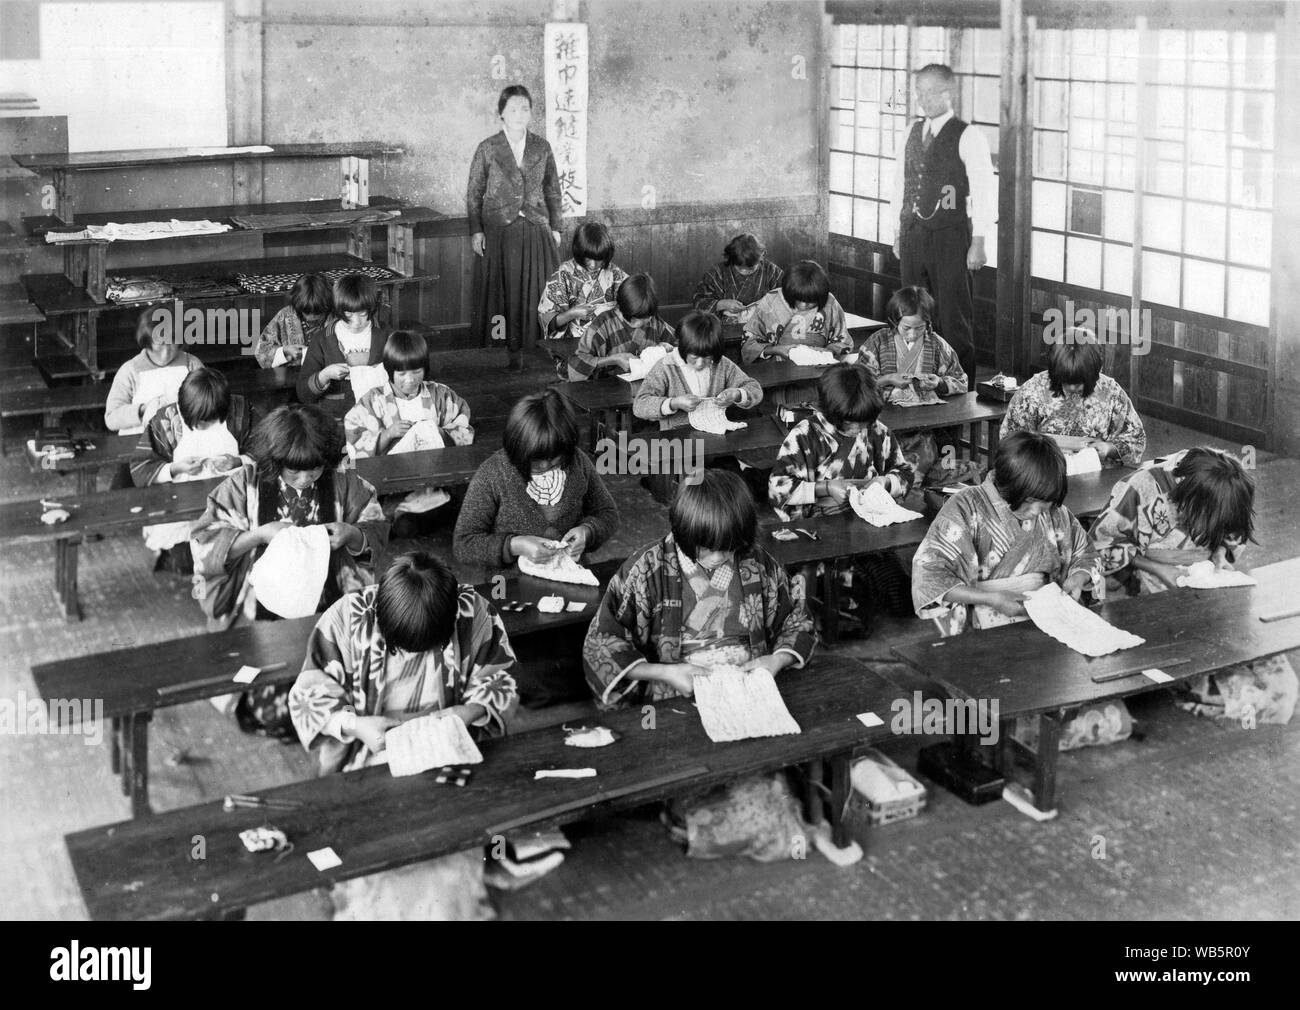 [ 1930 Giappone - Gli studenti della scuola elementare ] - femmina giapponese i bambini delle elementari in una classe sono la cucitura in classe mentre i loro due insegnanti a guardare. c1920s o 1930s. Xx secolo gelatina vintage silver stampa. Foto Stock